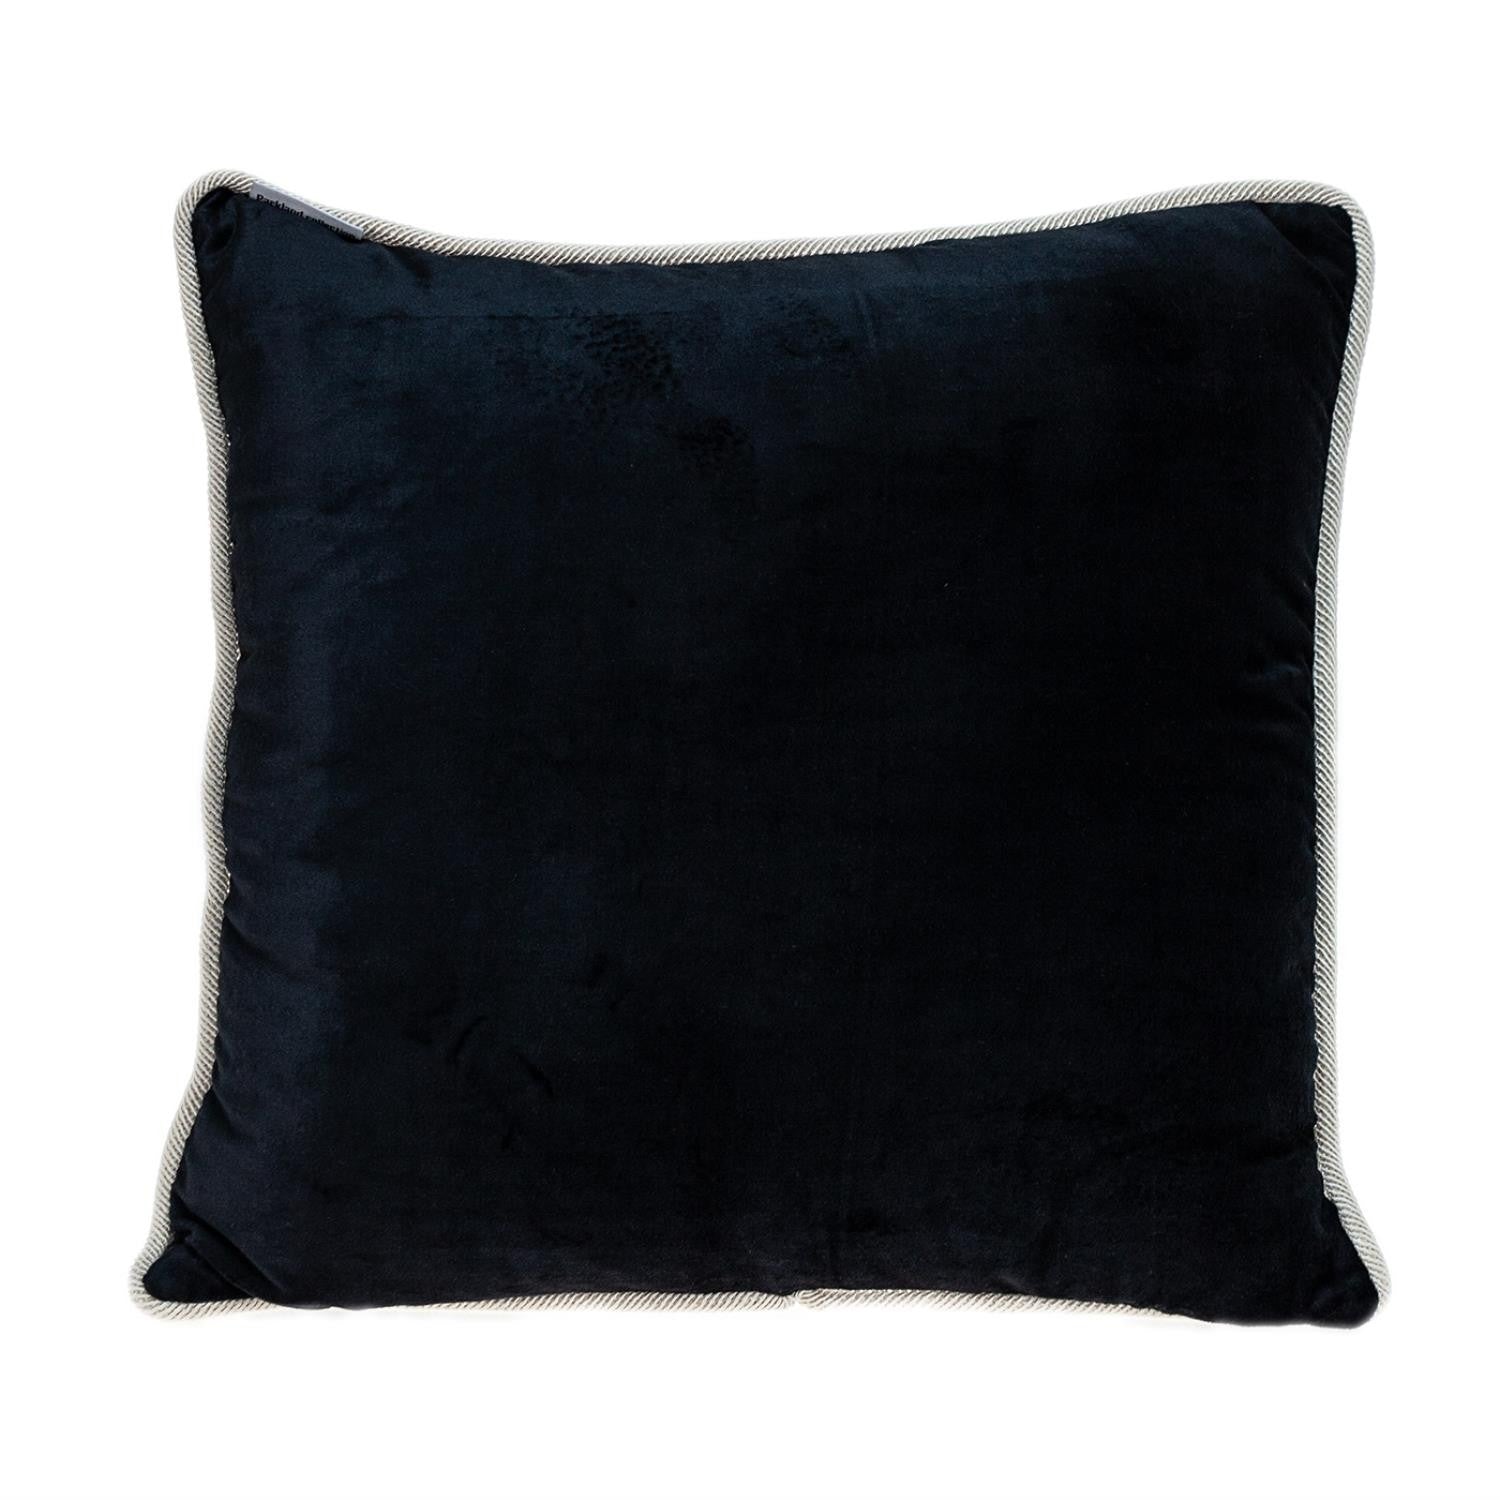 Reversible Black and White Square Velvet Throw Pillow